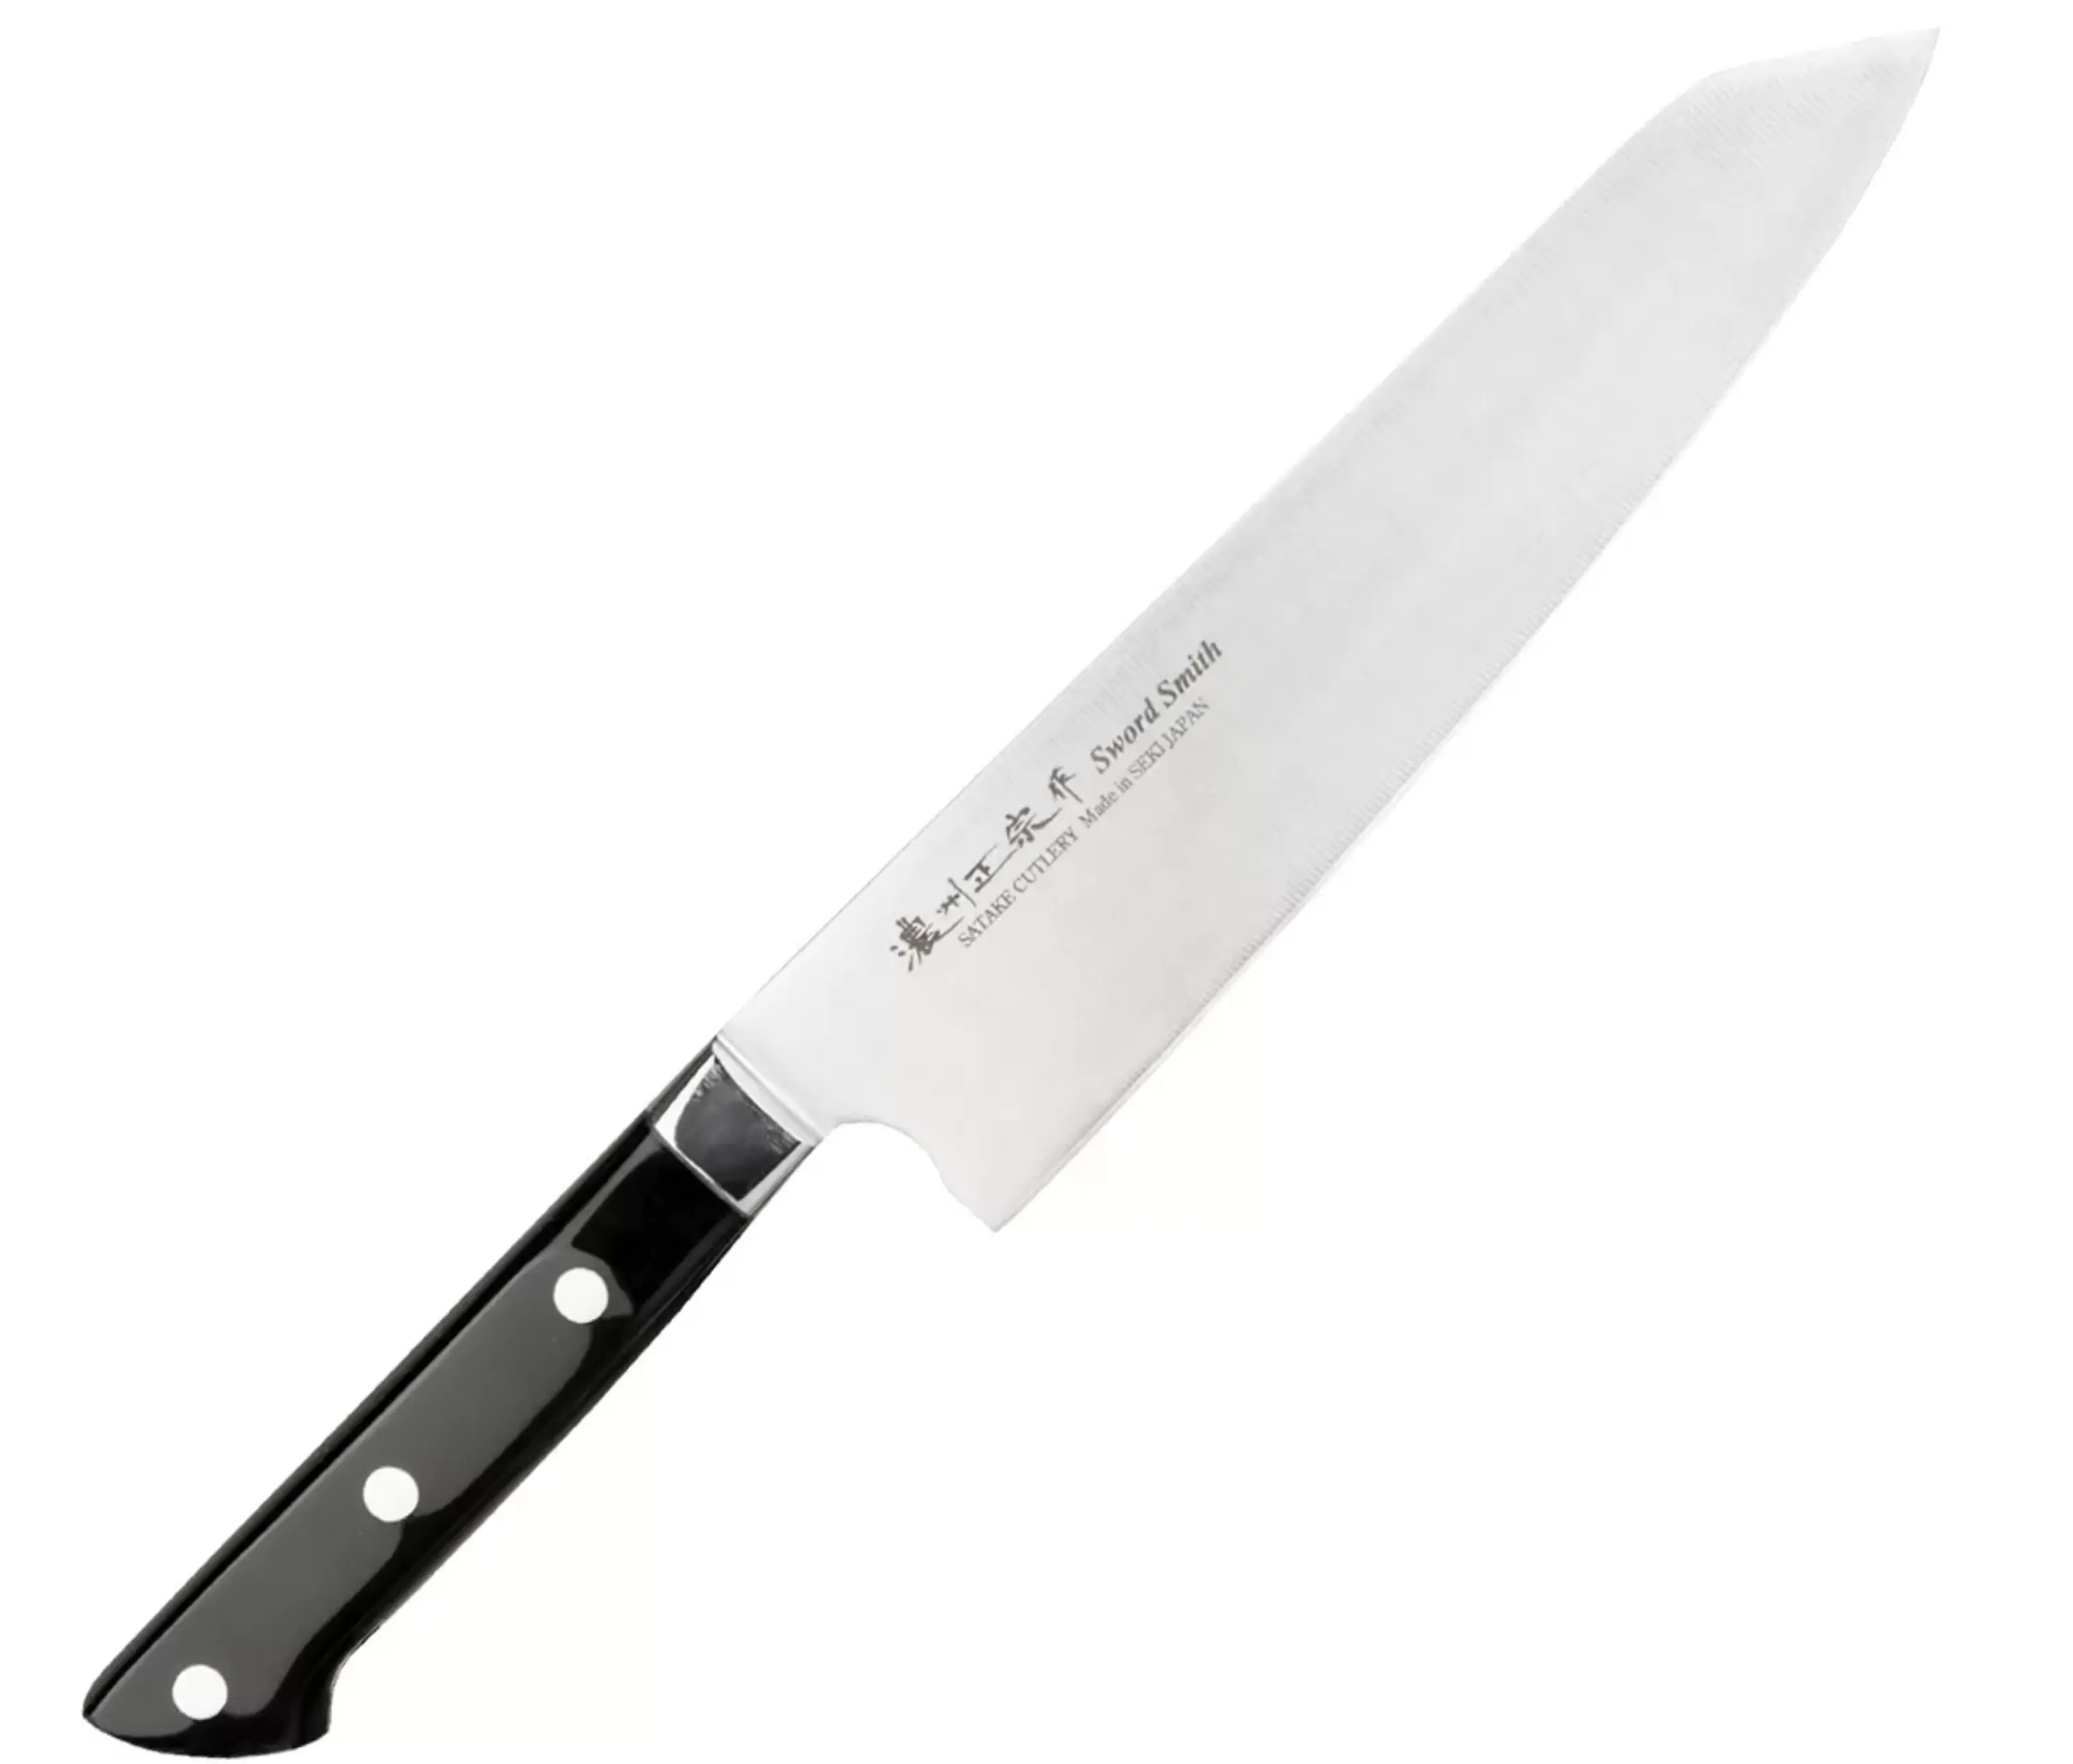 Нож кухонный Шеф(Bunka) Satake "StainlessBolster" 210мм, сталь DSR1K6 58HRC ручка ABS пластик Япония